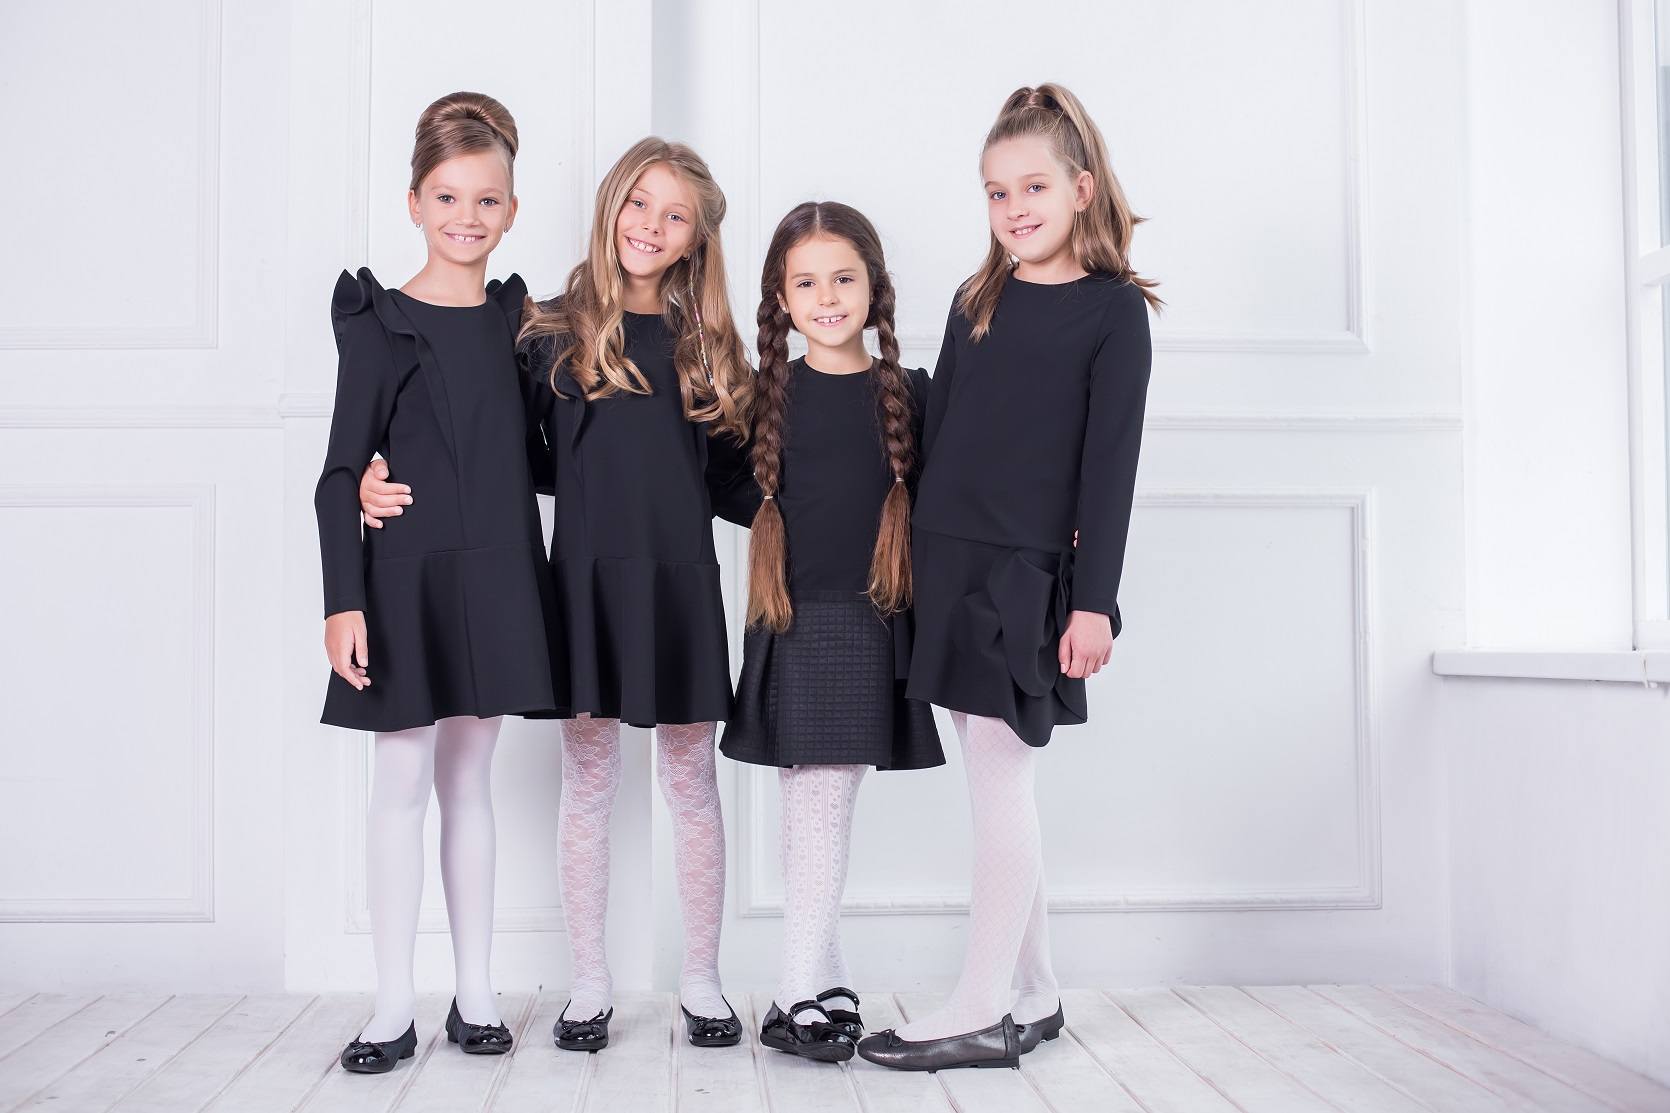 Школьная форма для девочек 2020-2021: модная одежда для начальных, средних и старших классов